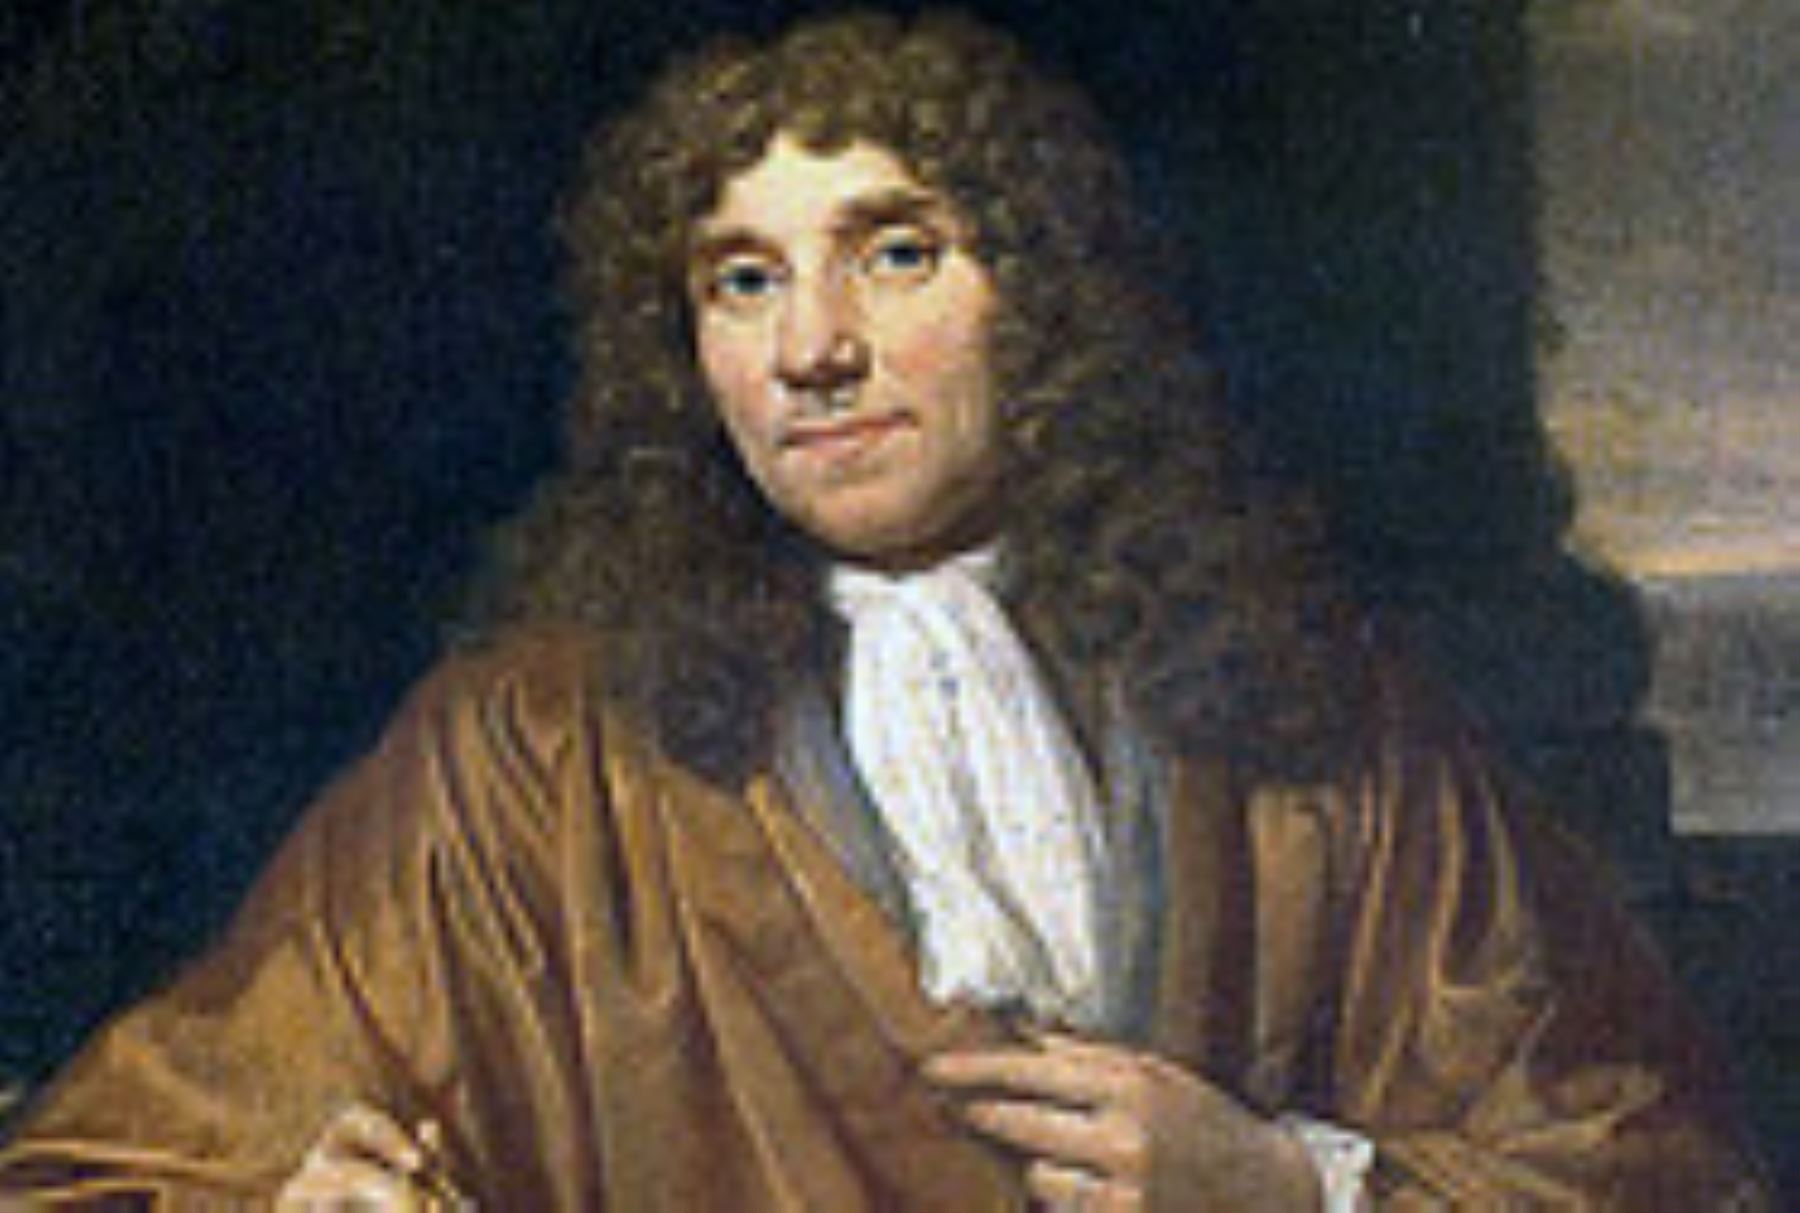 Biólogo holandés Anton van Leeuwenhoek. Internet/Medios